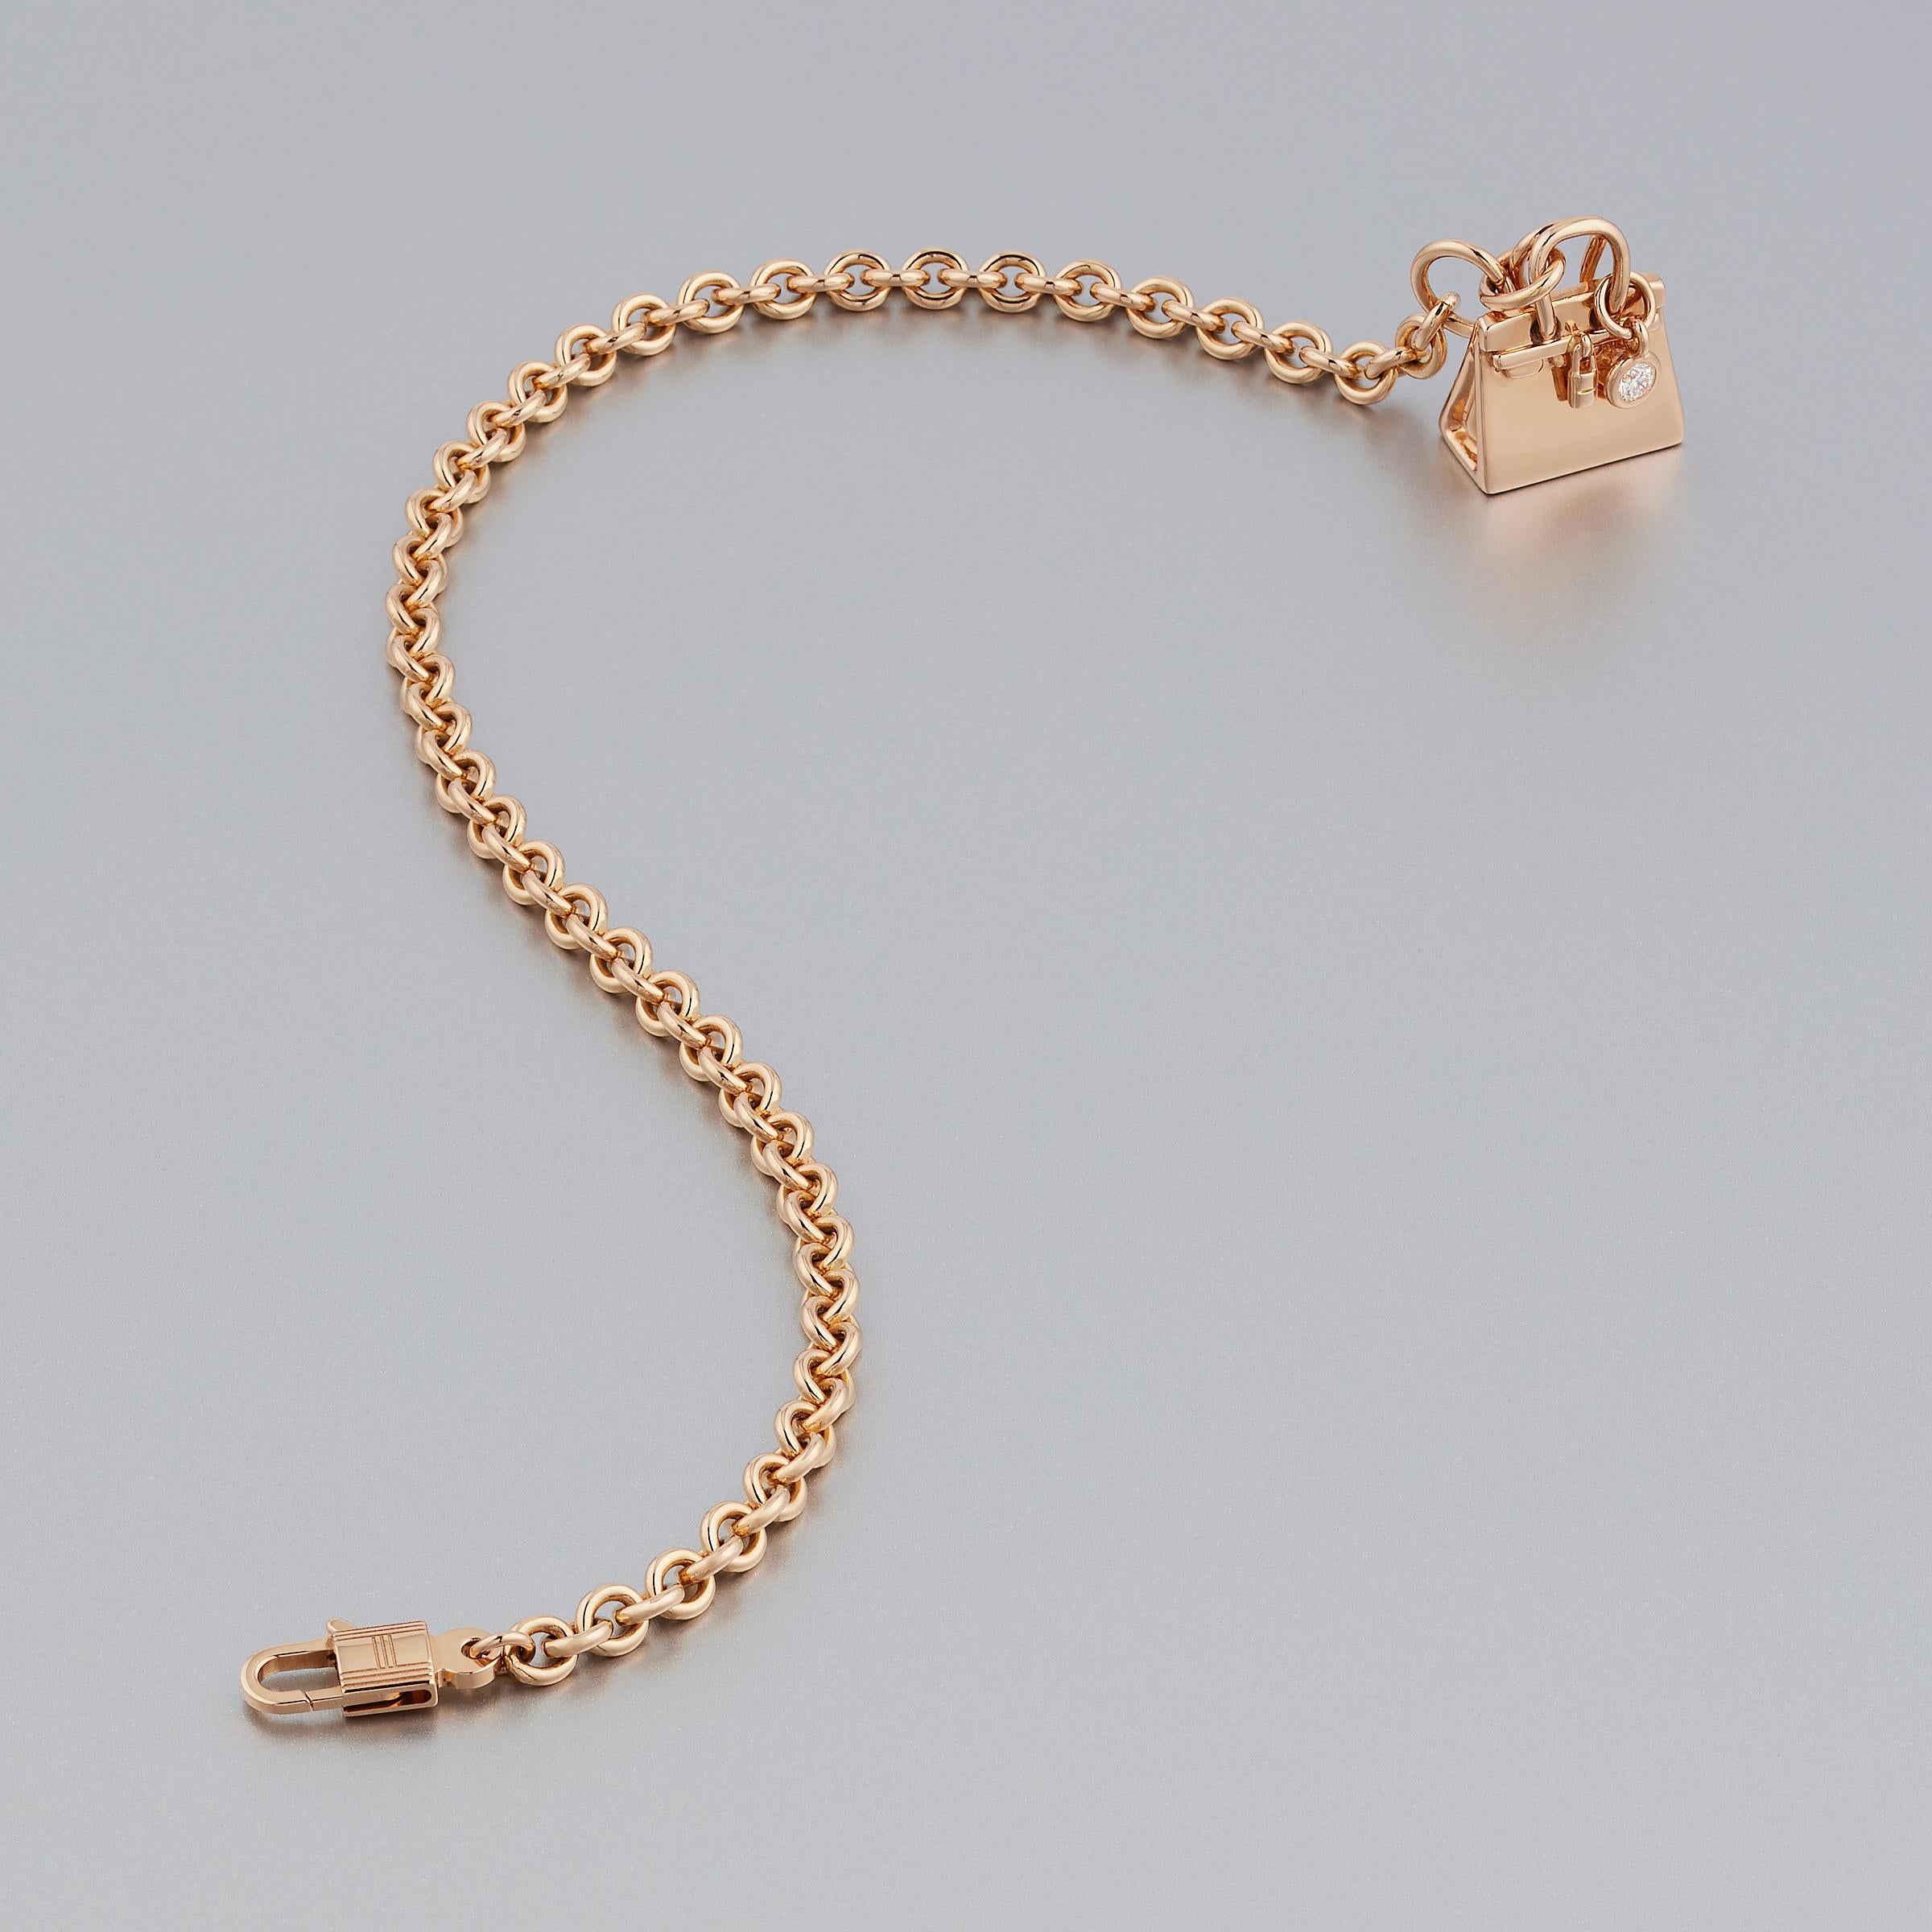 Elegantes Hermes Birkin Amulette Diamantarmband aus 18 Karat Gold. Dieses zarte Kettenarmband ist Teil der beliebten Amulettes-Kollektion von Hermes und zeigt einen entzückenden Charme in Form einer Birks-Tasche. Das Armband erstrahlt in